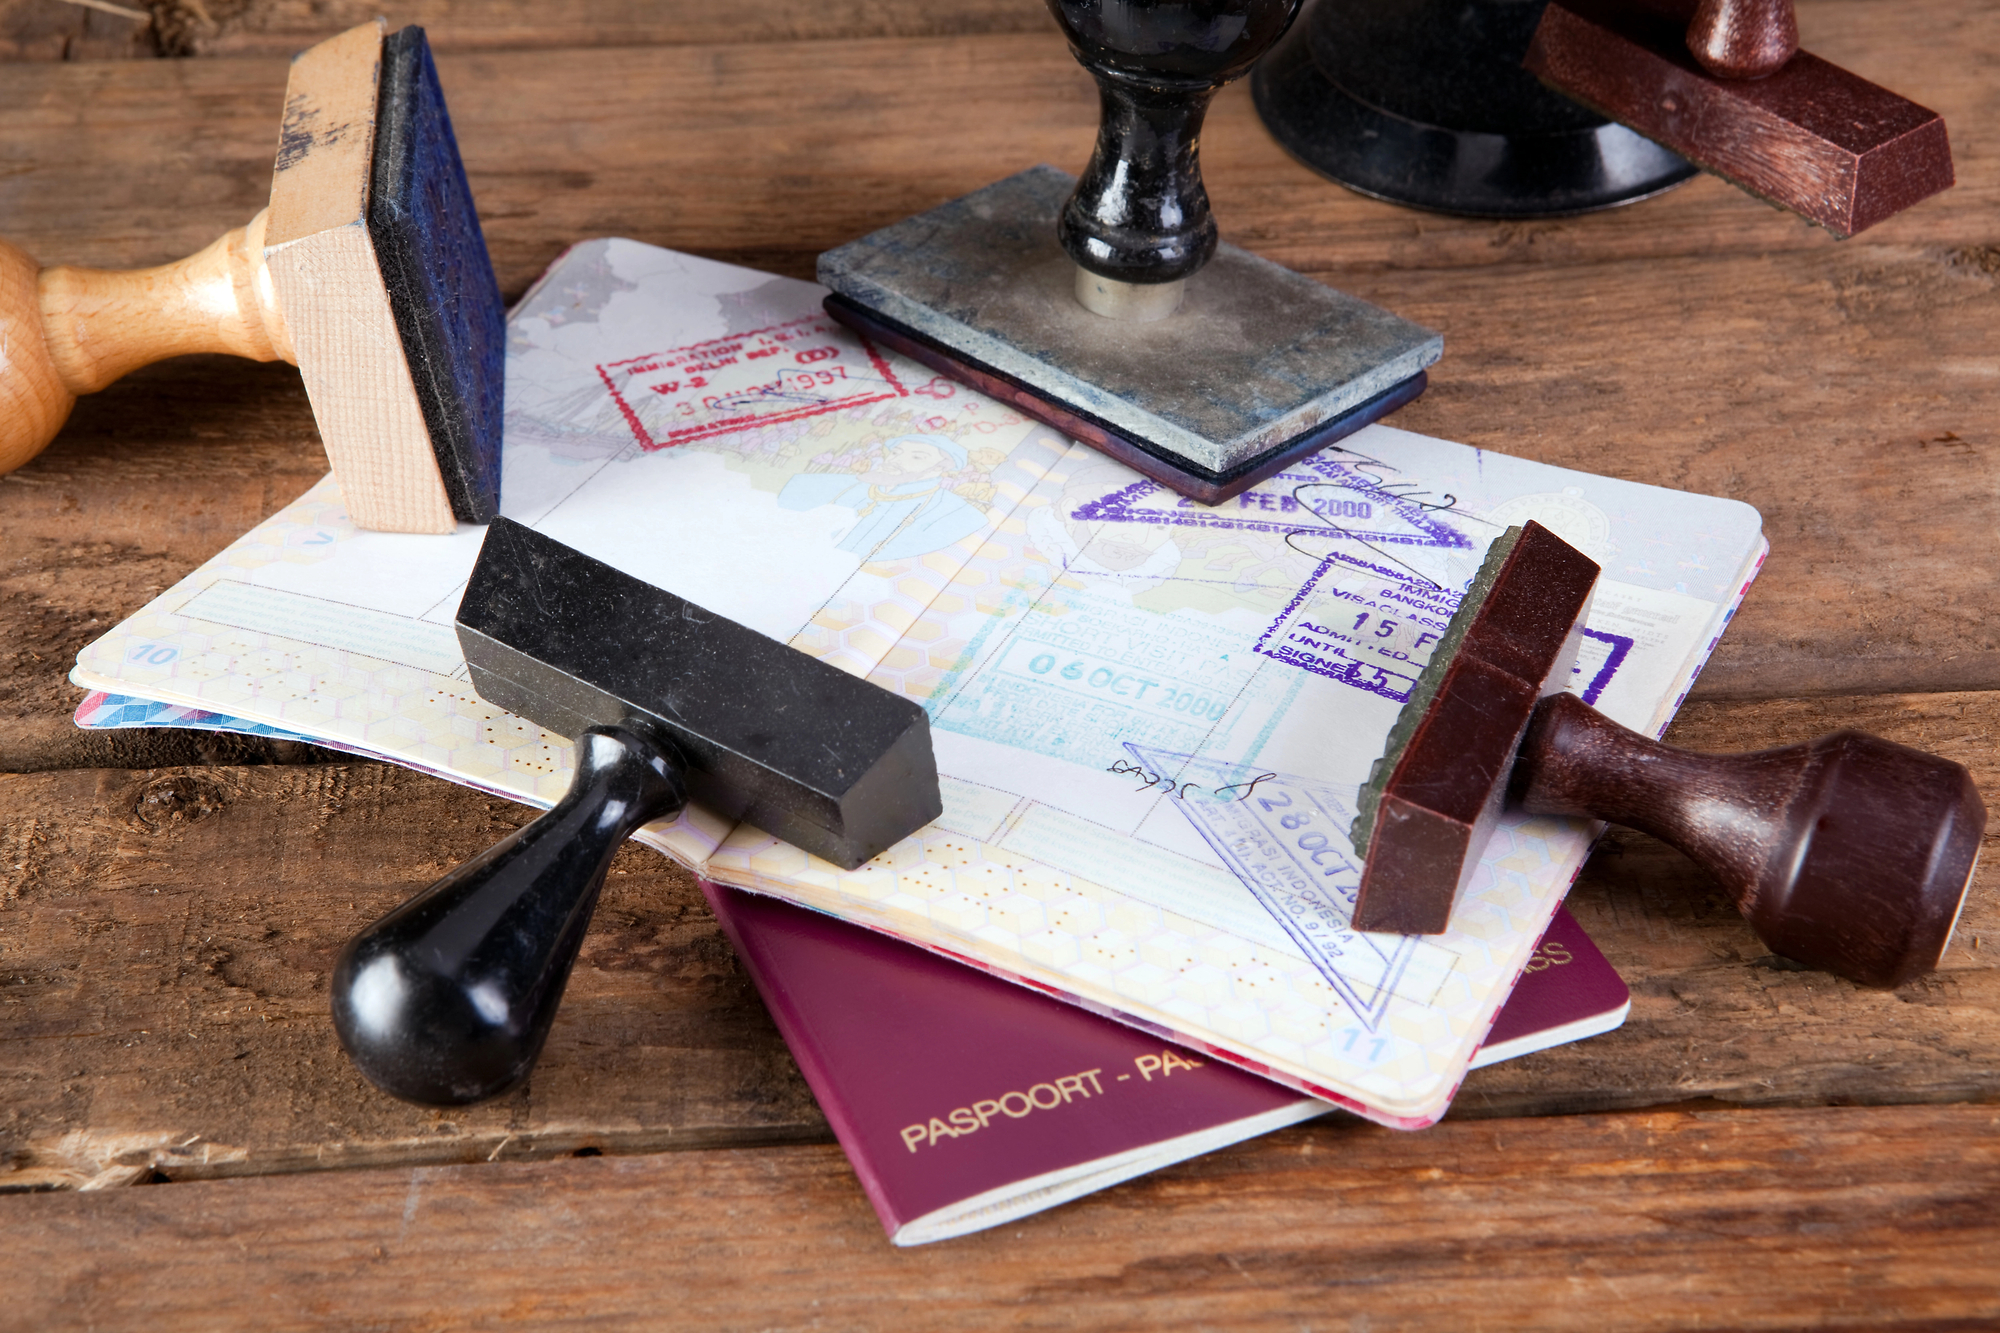 Post successivo: Da luglio sarà possibile richiedere il passaporto negli uffici postali